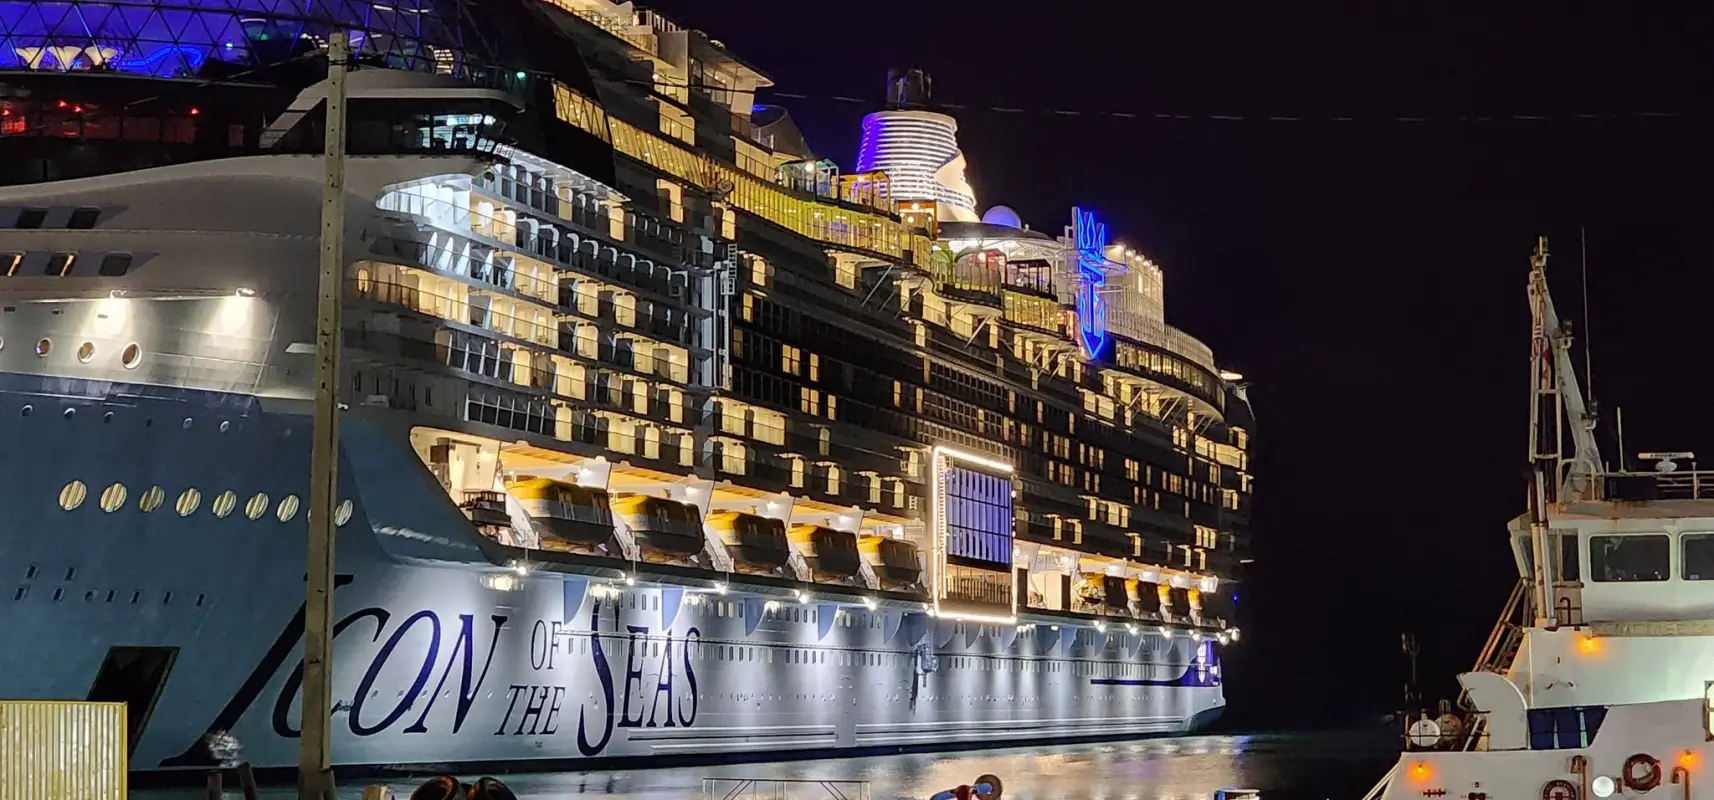 El ‘Icon of the Seas’, el crucero más grande del mundo, llega a Miami para su inauguración